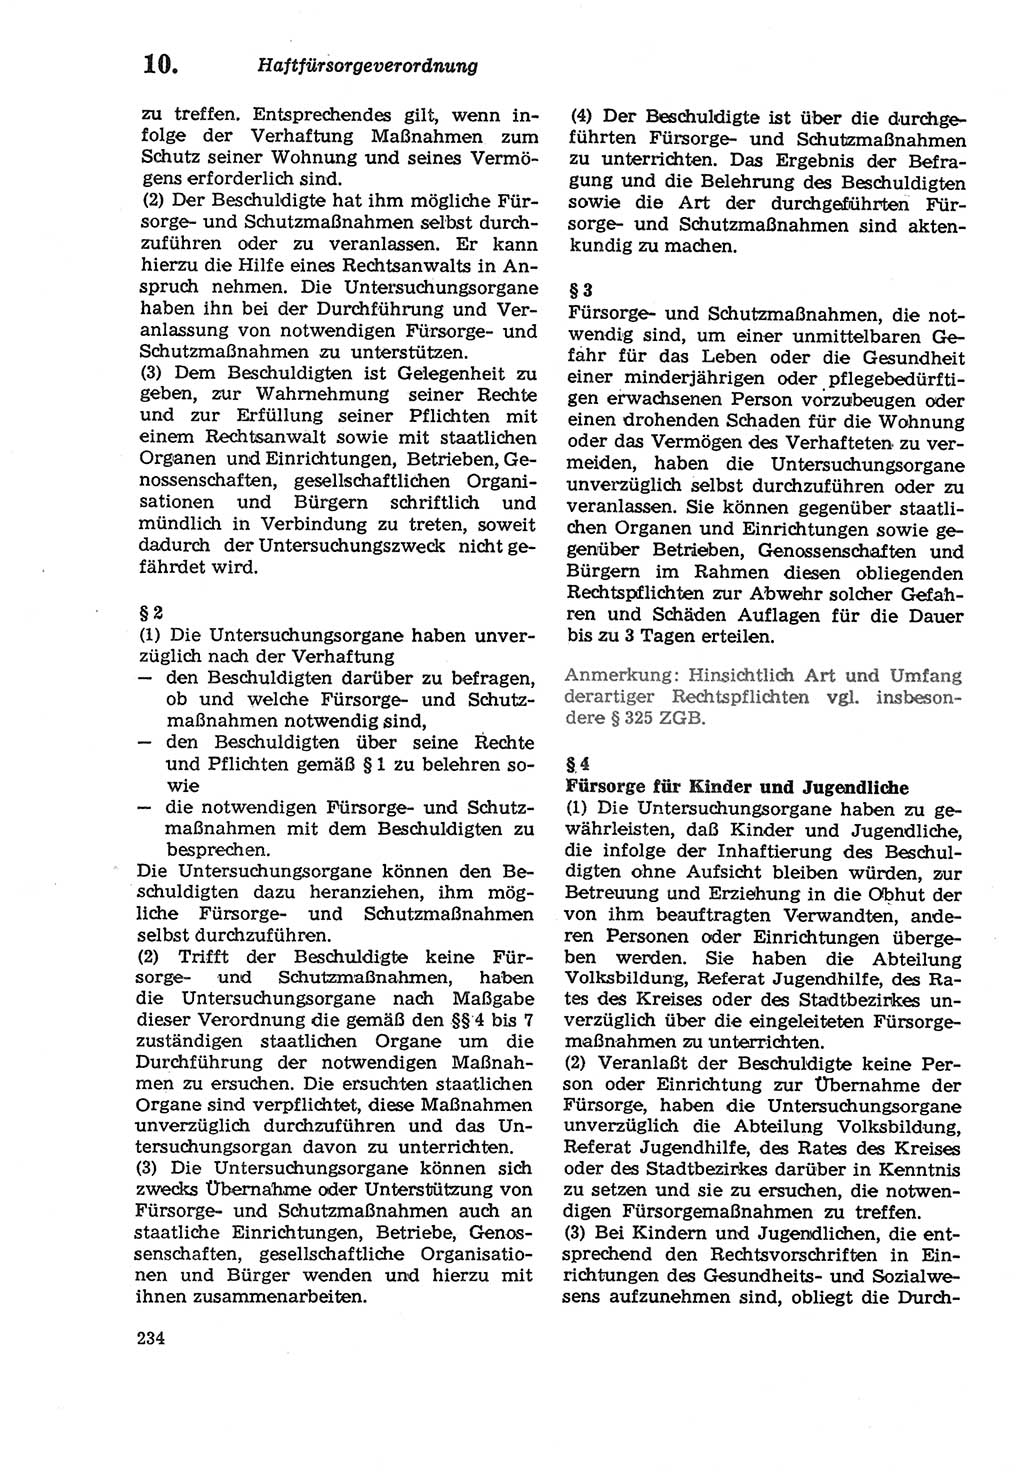 Strafprozeßordnung (StPO) der Deutschen Demokratischen Republik (DDR) sowie angrenzende Gesetze und Bestimmungen 1979, Seite 234 (StPO DDR Ges. Best. 1979, S. 234)